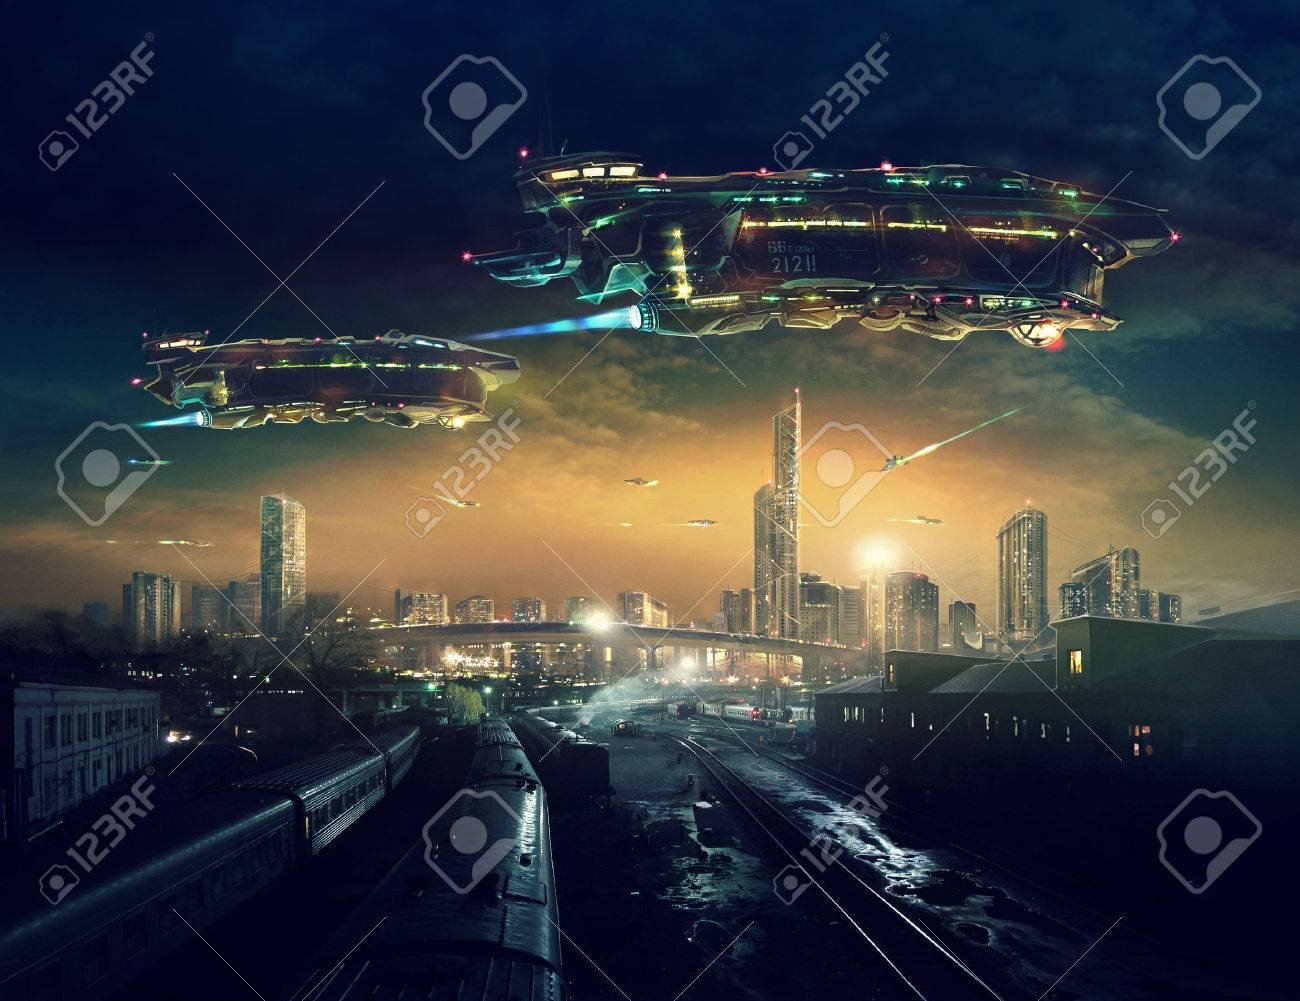 «Paisaje urbano del futuro postapocalíptico», de Pavel Zhovba, una de las imágenes base para la portada